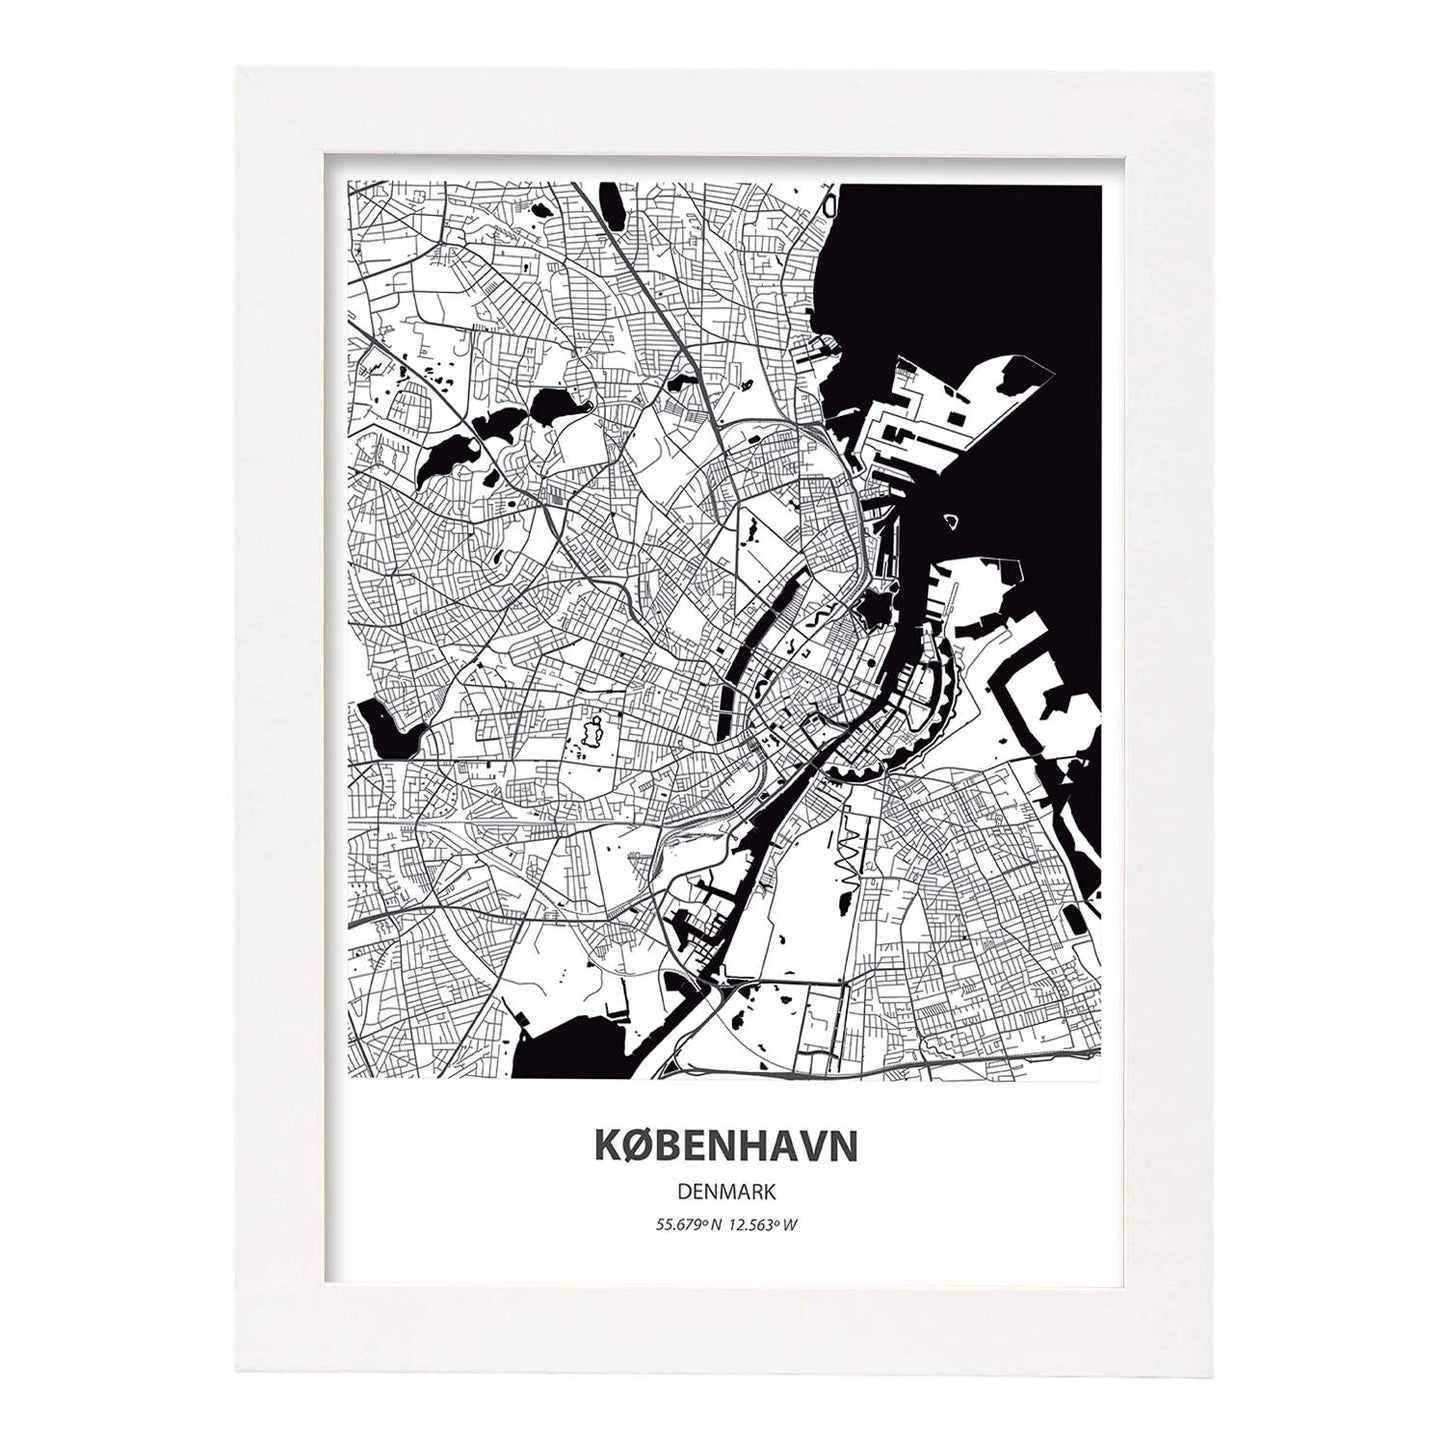 Poster con mapa de Kobenhavn - Dinamarca. Láminas de ciudades de Europa con mares y ríos en color negro.-Artwork-Nacnic-A3-Marco Blanco-Nacnic Estudio SL